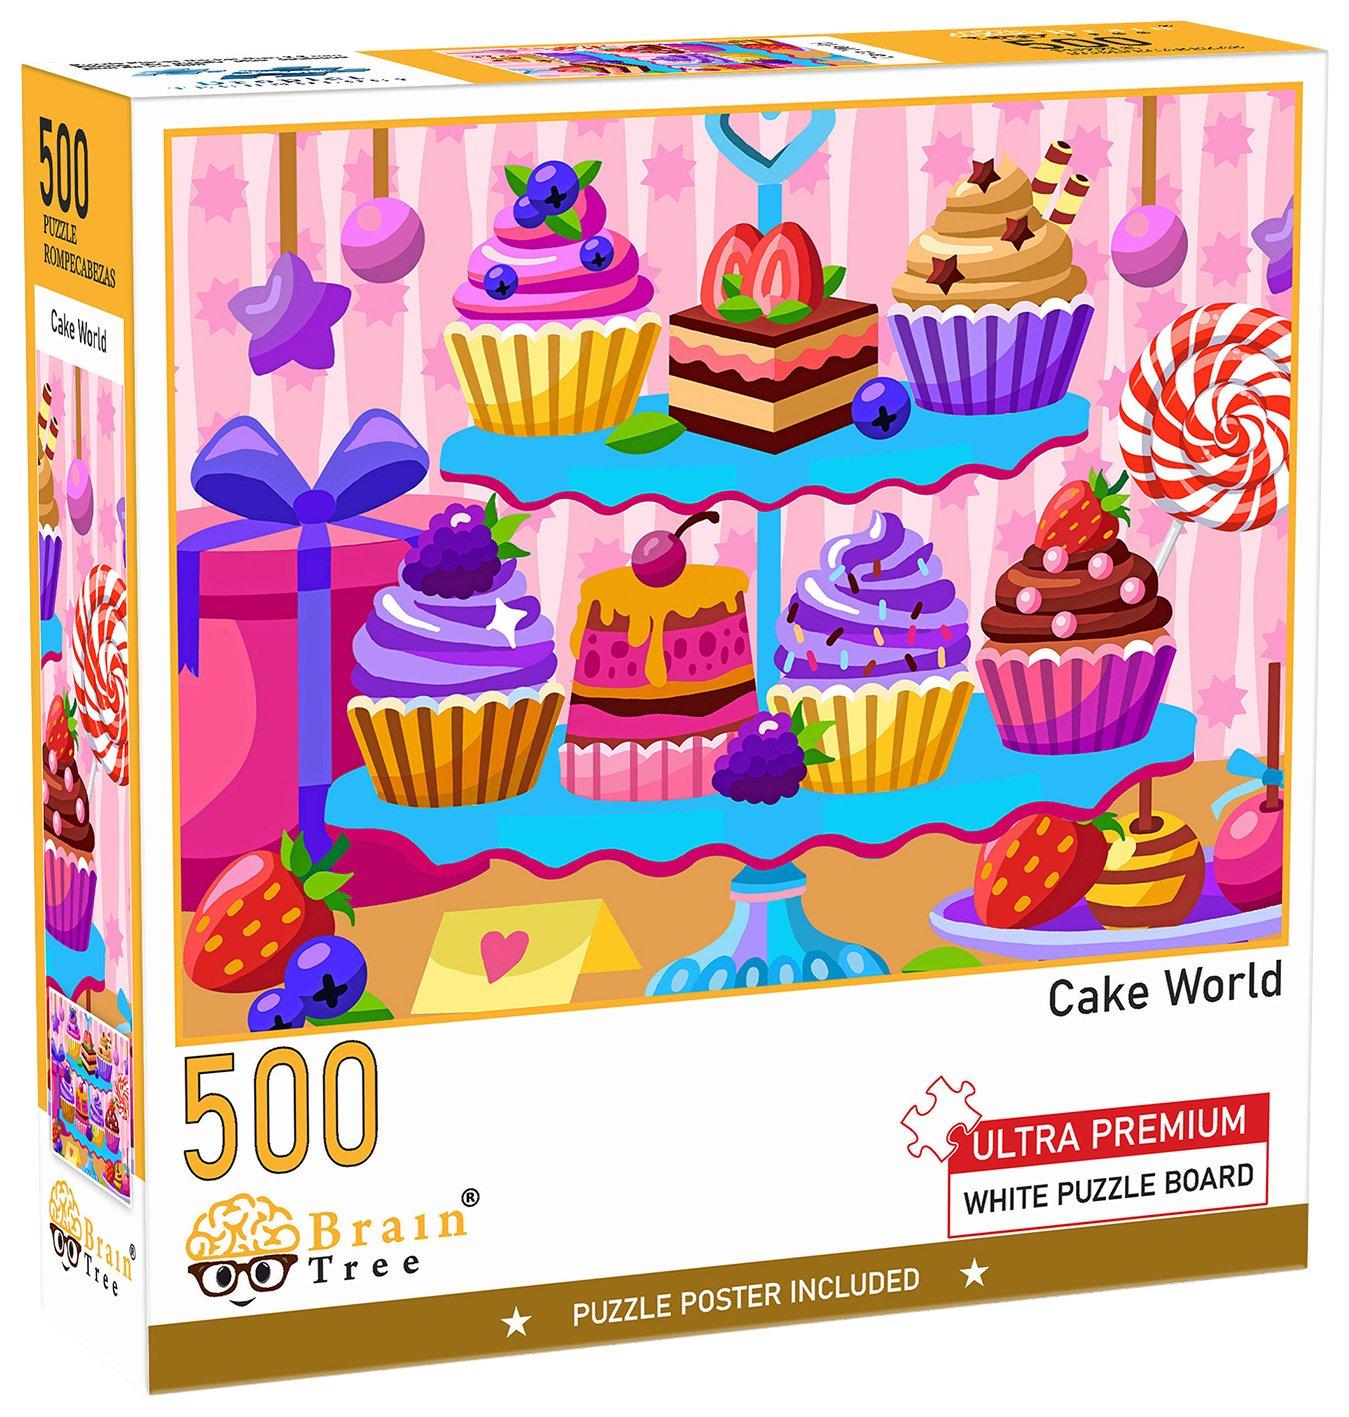 500 Piece Cake World Jigsaw Puzzle